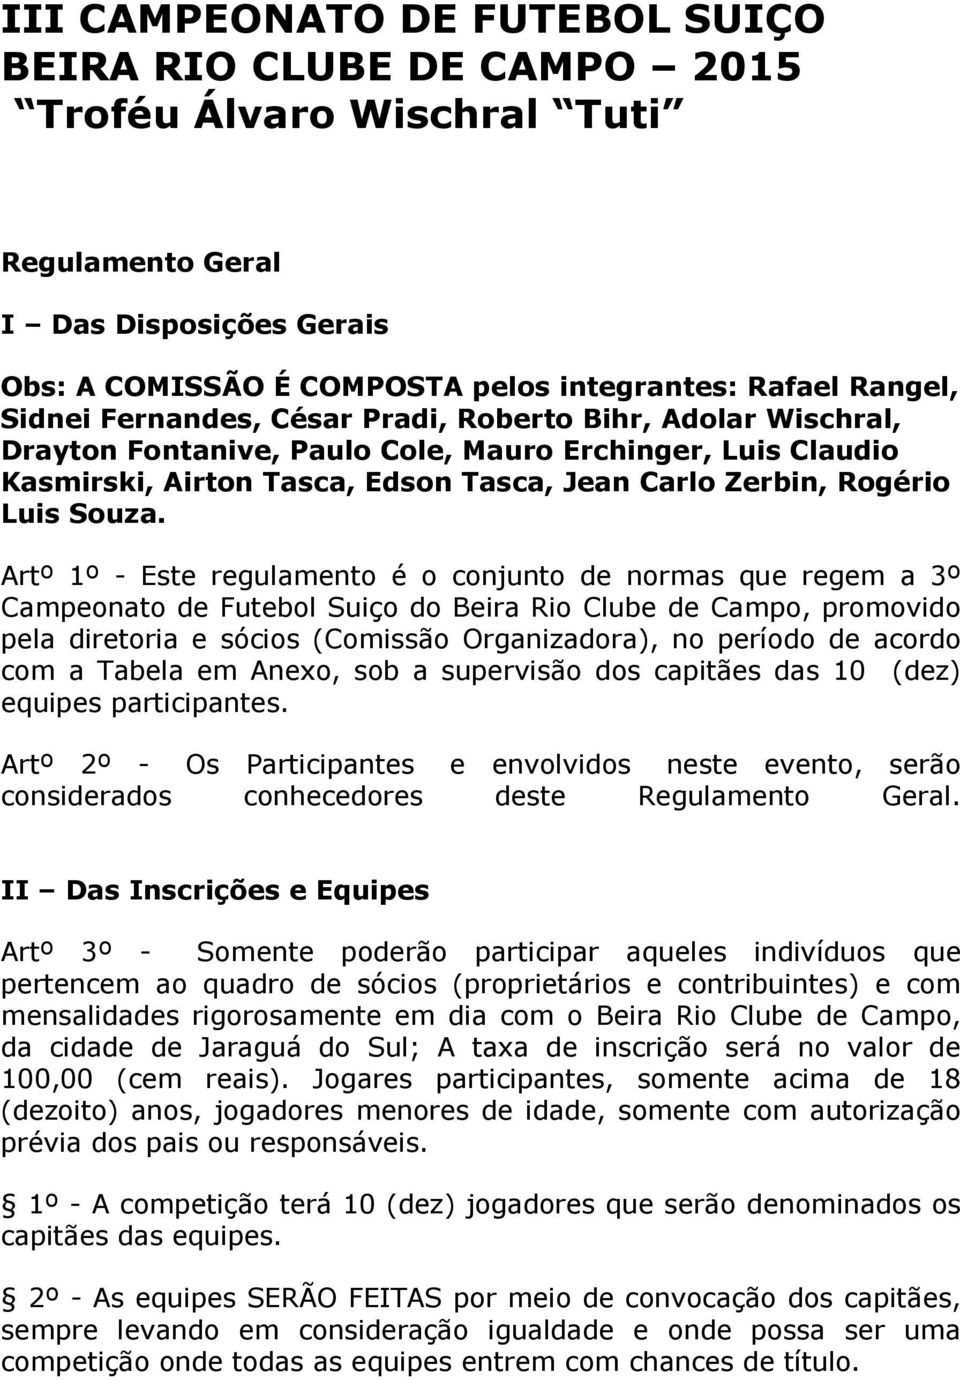 Artº 1º - Este regulamento é o conjunto de normas que regem a 3º Campeonato de Futebol Suiço do Beira Rio Clube de Campo, promovido pela diretoria e sócios (Comissão Organizadora), no período de